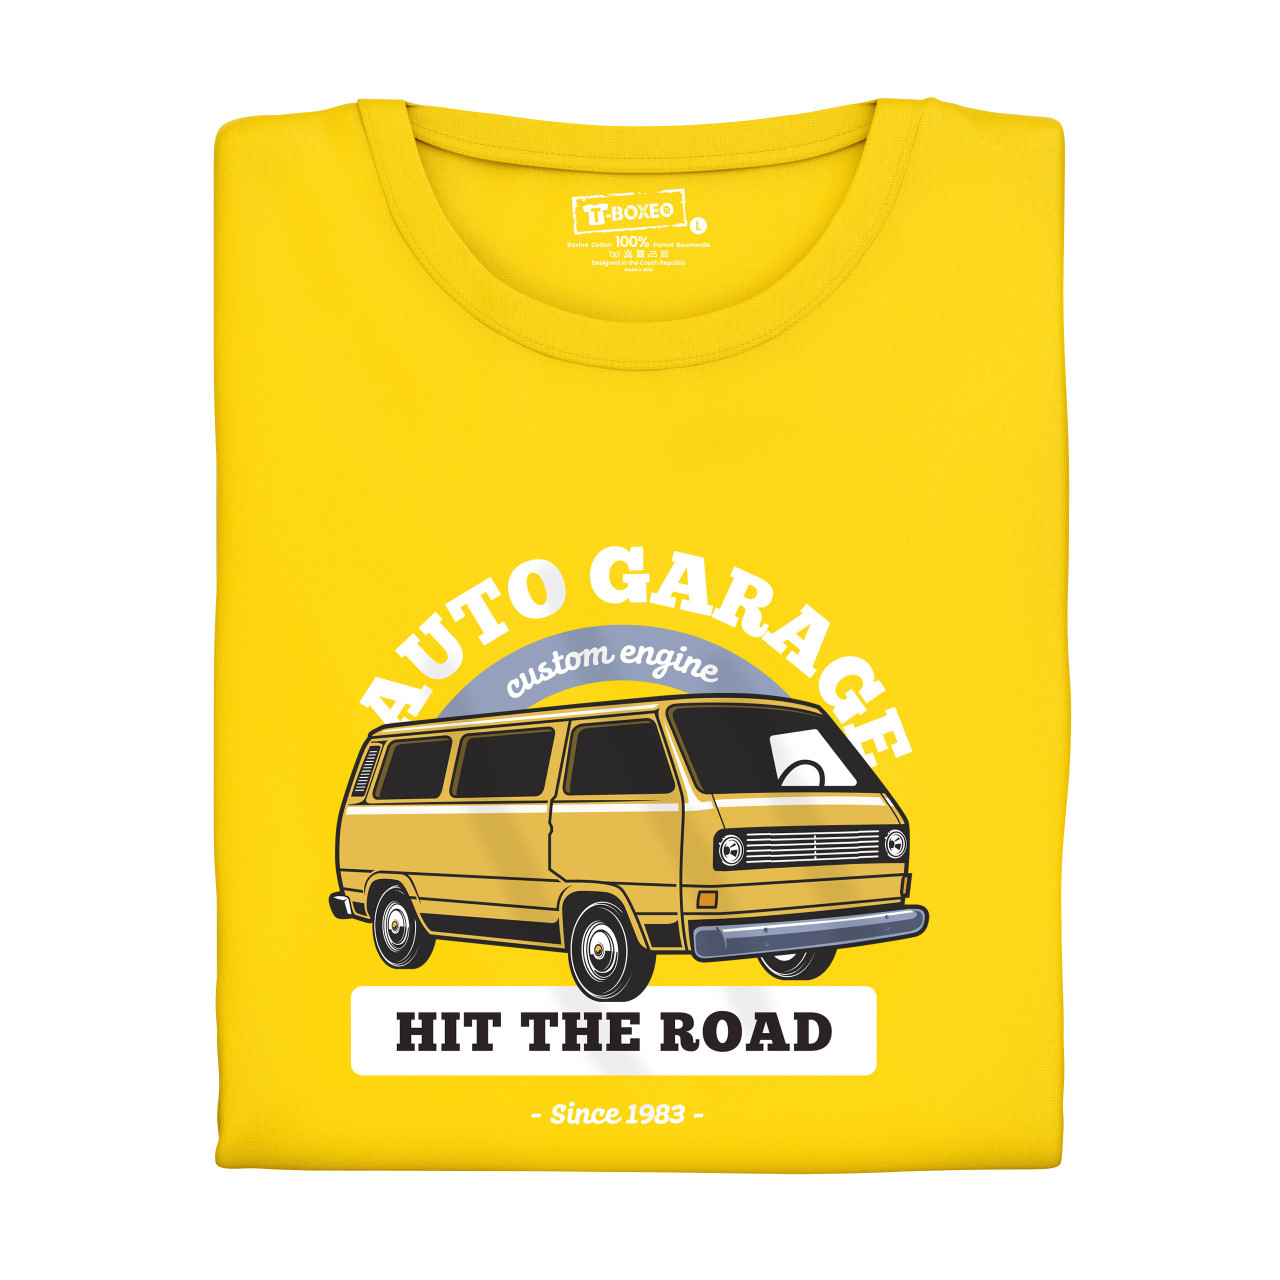 Pánské tričko s potiskem “Auto Garage"